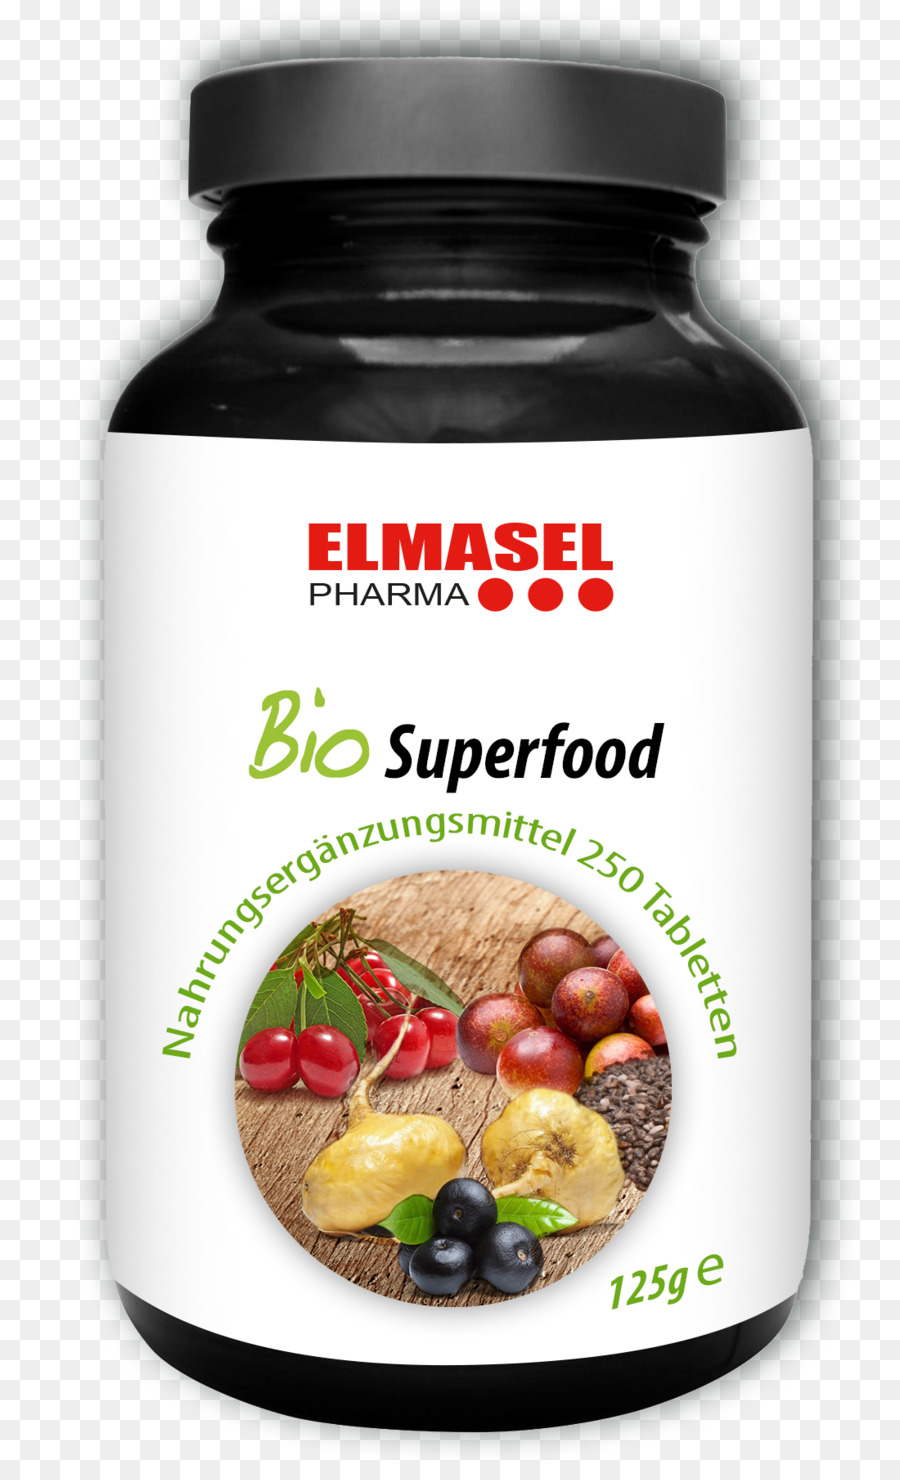 Nahrungsergänzungsmittel Superfood FC Bayern München Bio Lebensmittel ELMASEL PHARMA GmbH - Pharma